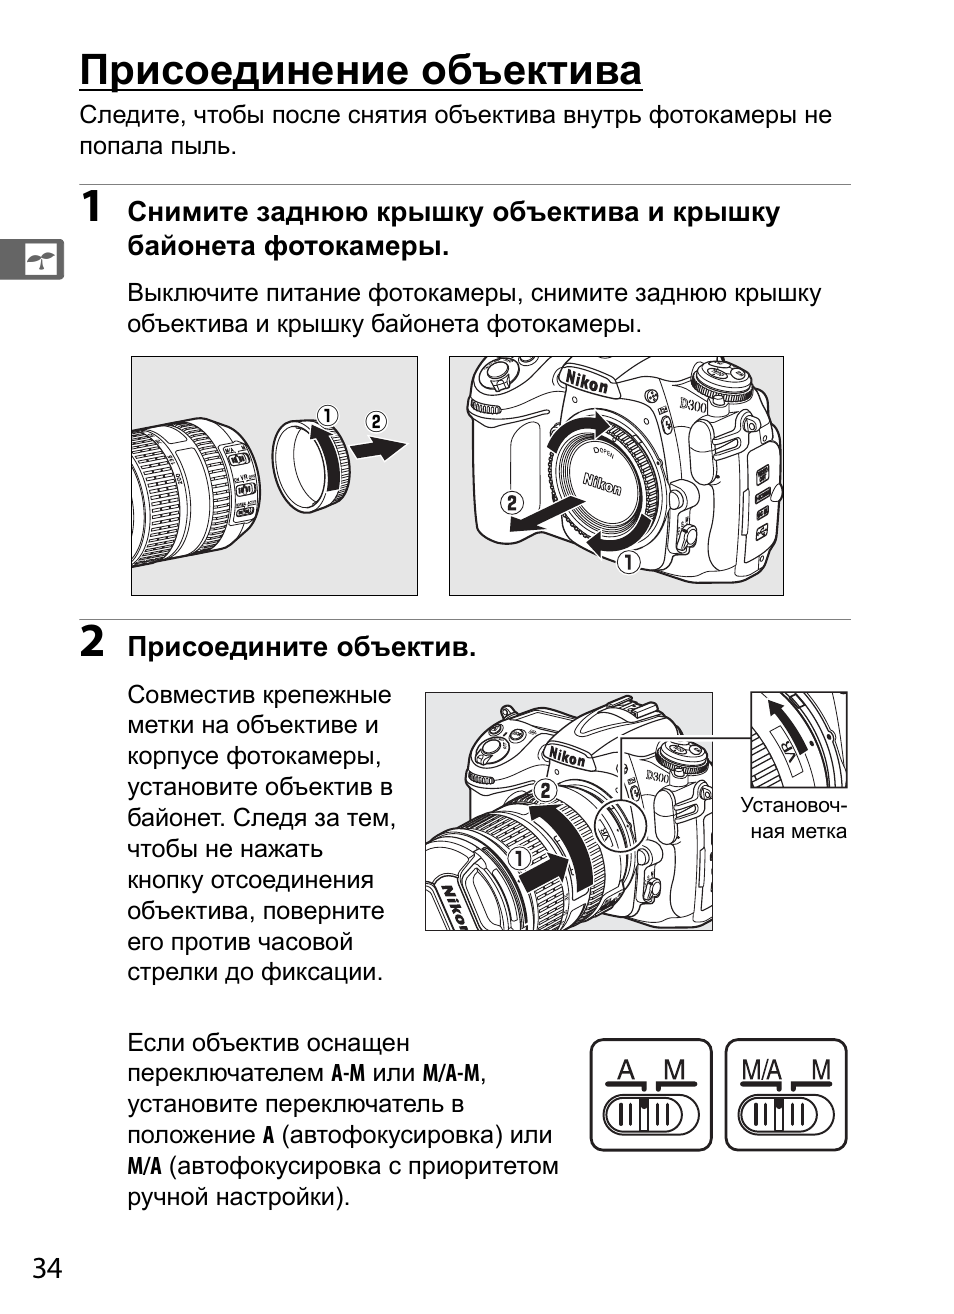 Объектив инструкция. Nikon d80 инструкция на русском языке. Инструкция по эксплуатации фотоаппарата Nikon. Инструкция к линзам y7d.